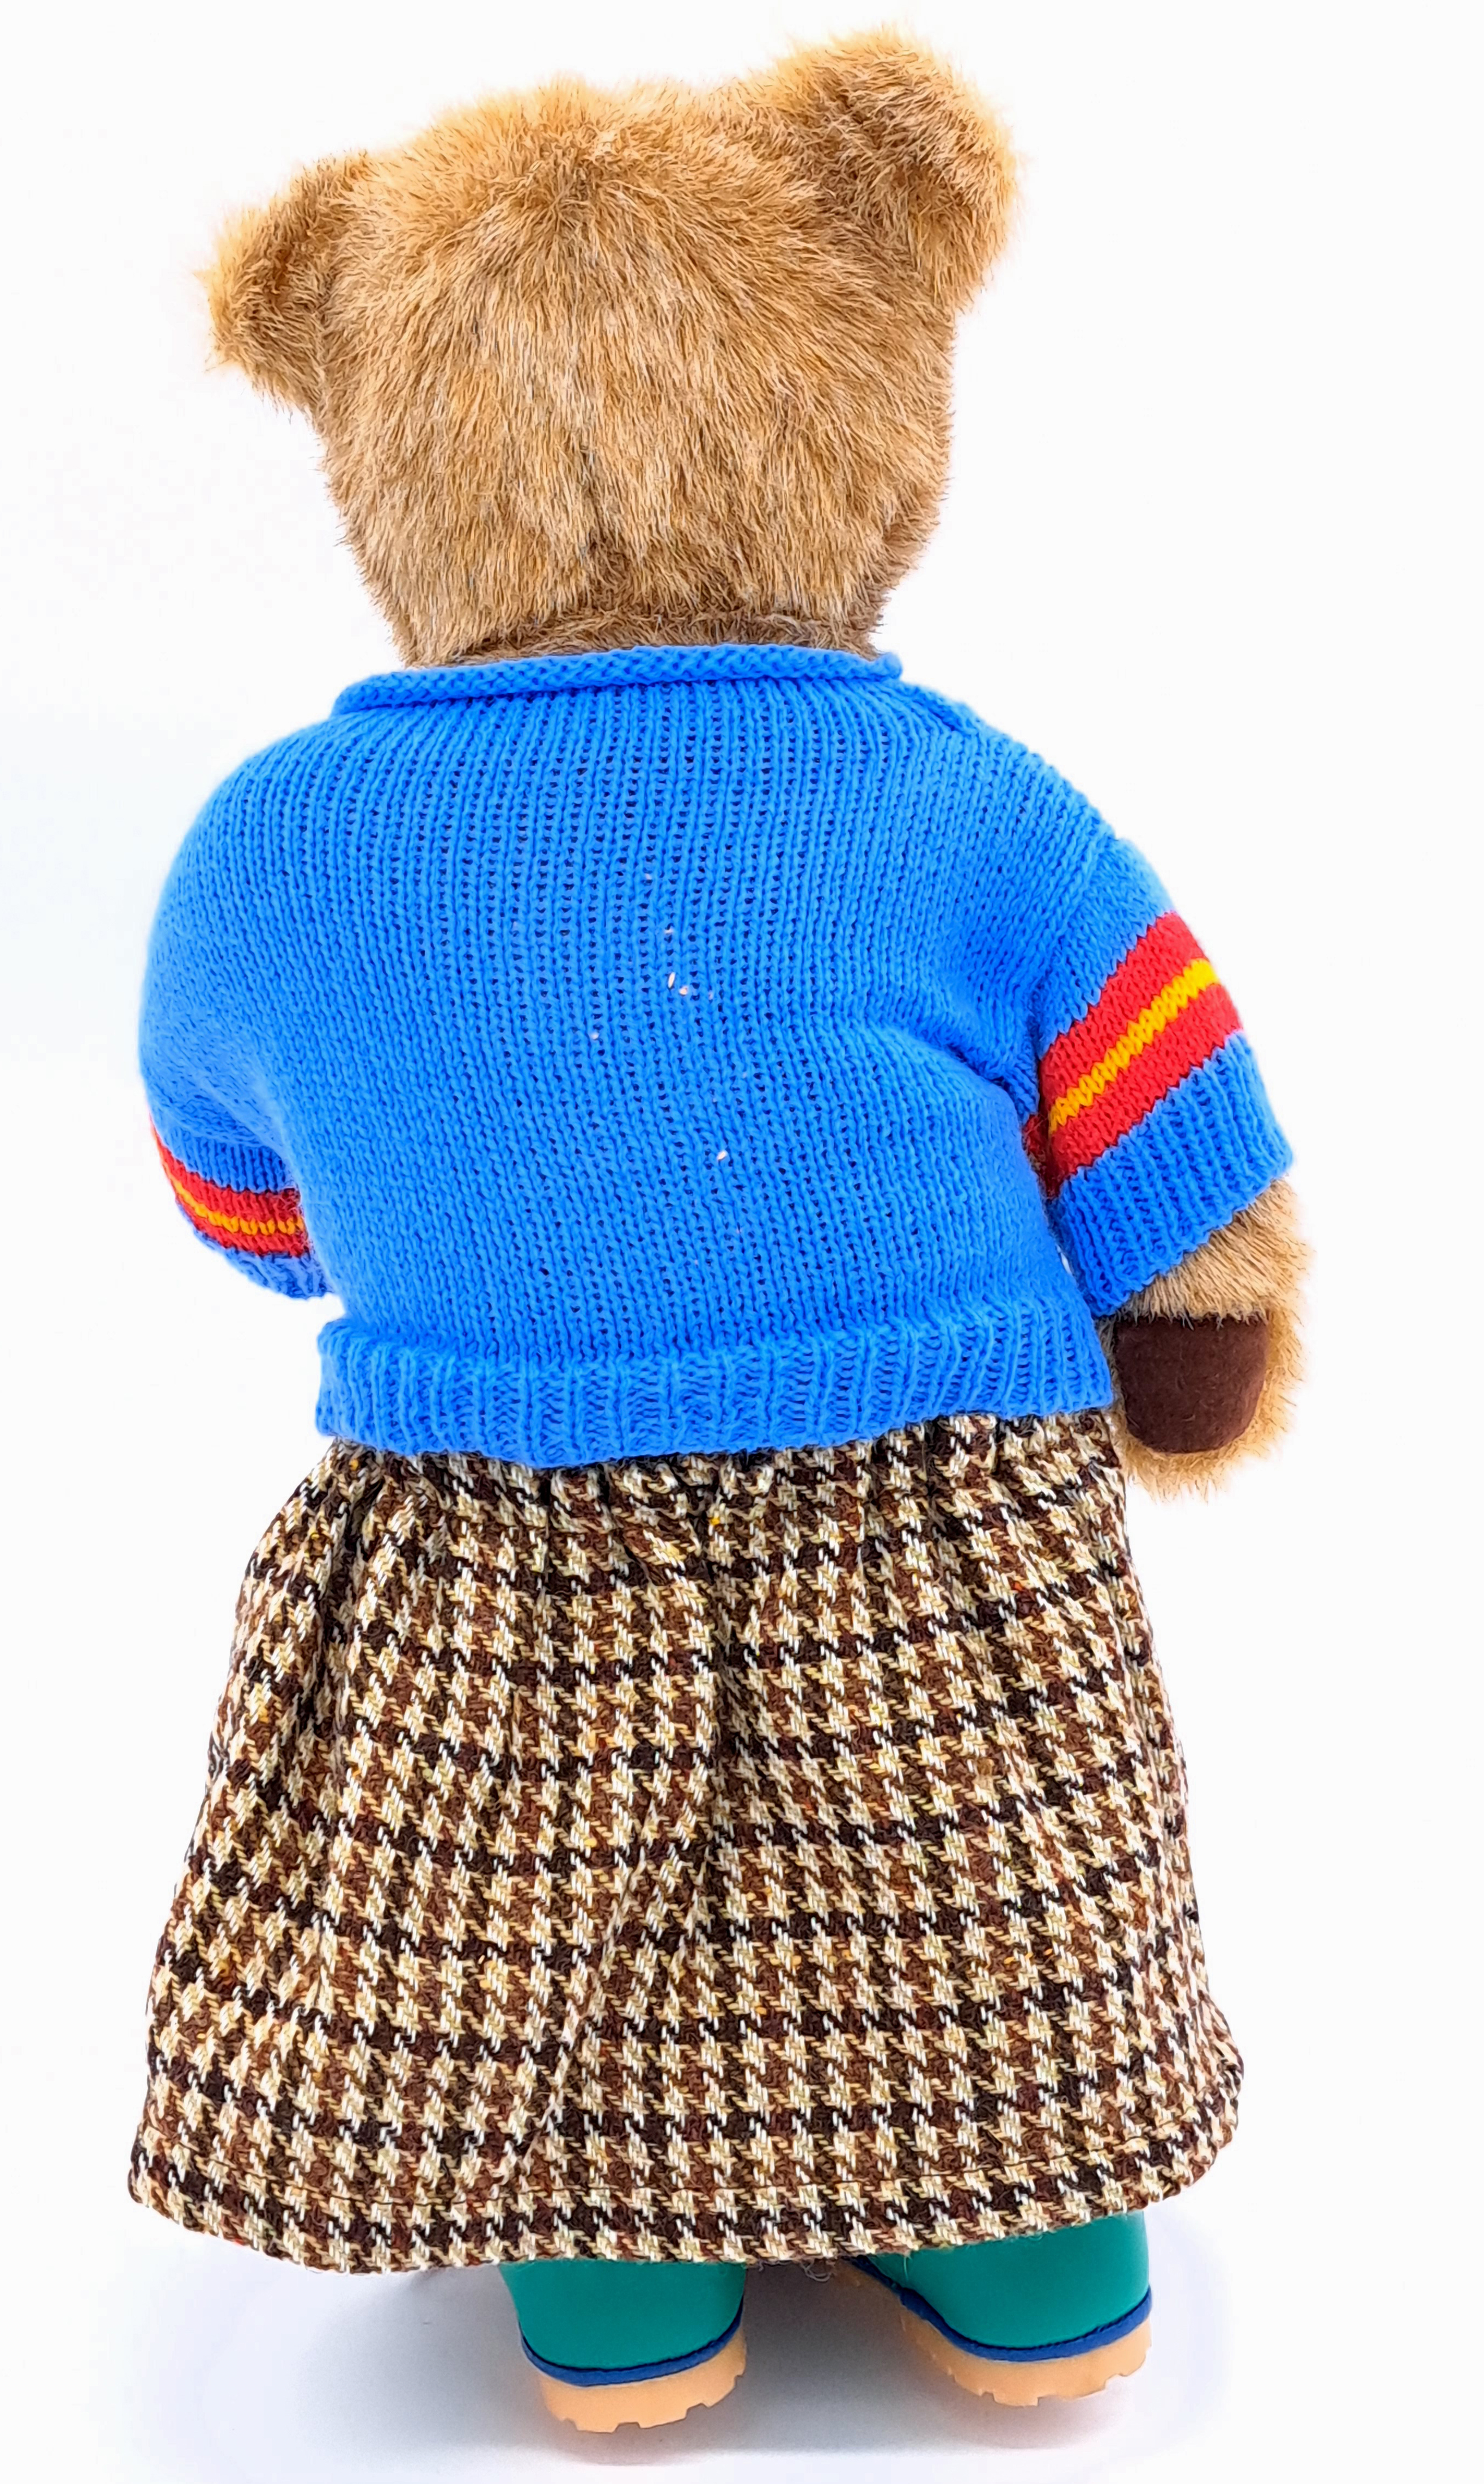 Dean's Rag Book Lakeland Bears (UK) vintage teddy bear - Image 2 of 2